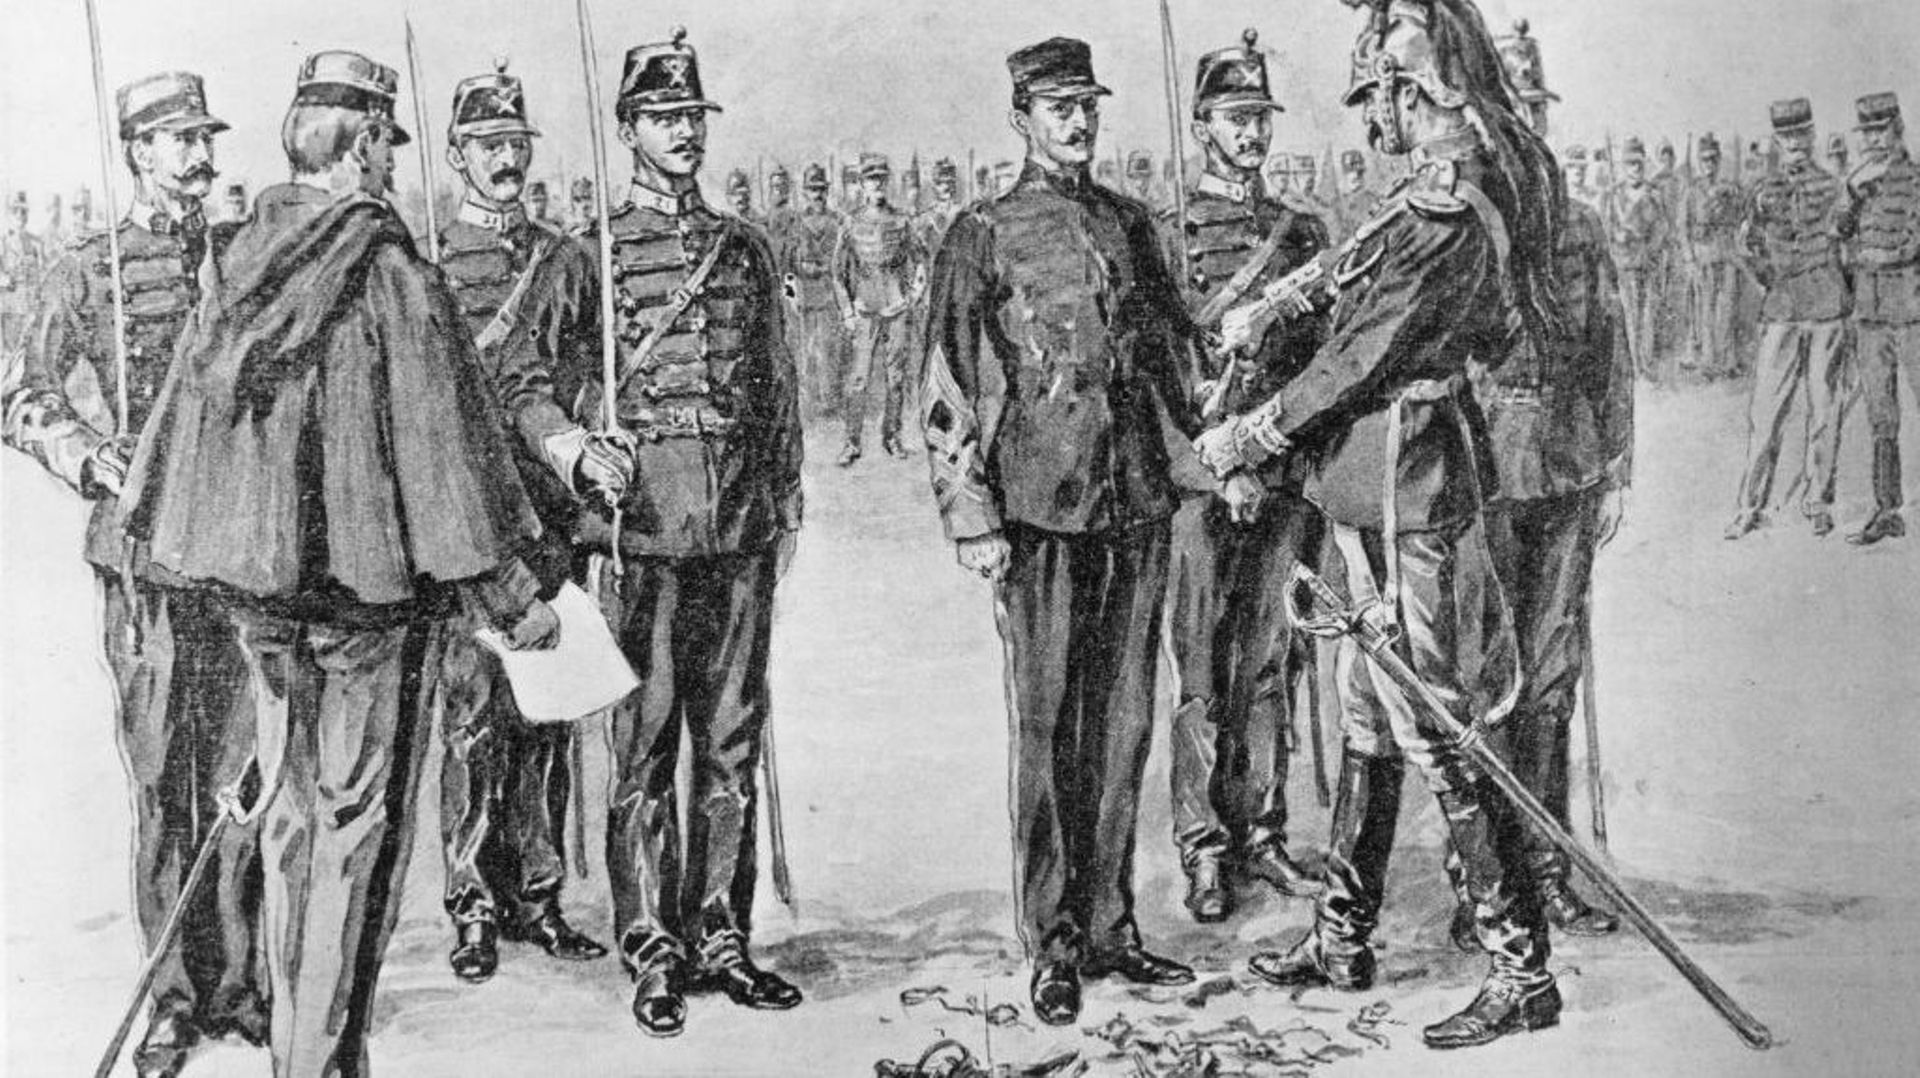 La dégradation de Dreyfus le 5 janvier 1895 après son jugement en cour martiale en 1894.